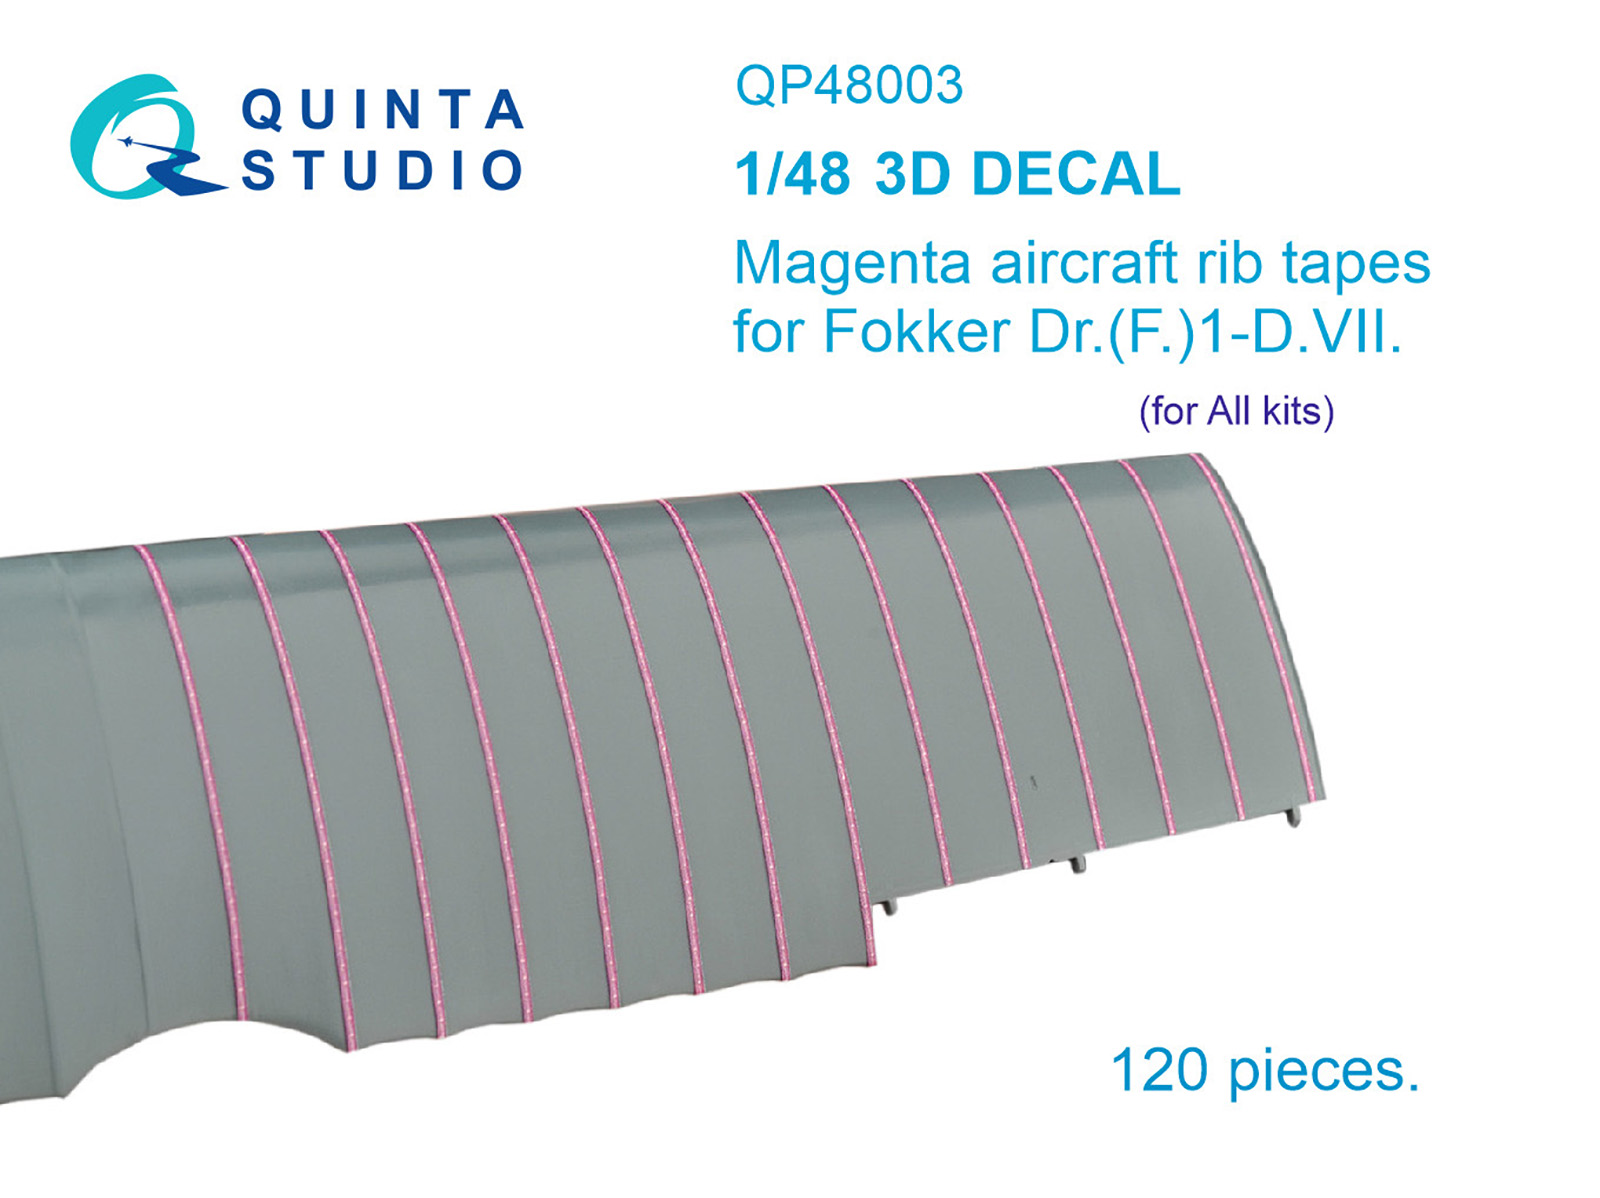 Magenta rip tapes for Fokker Dr.(F)I-D.VII